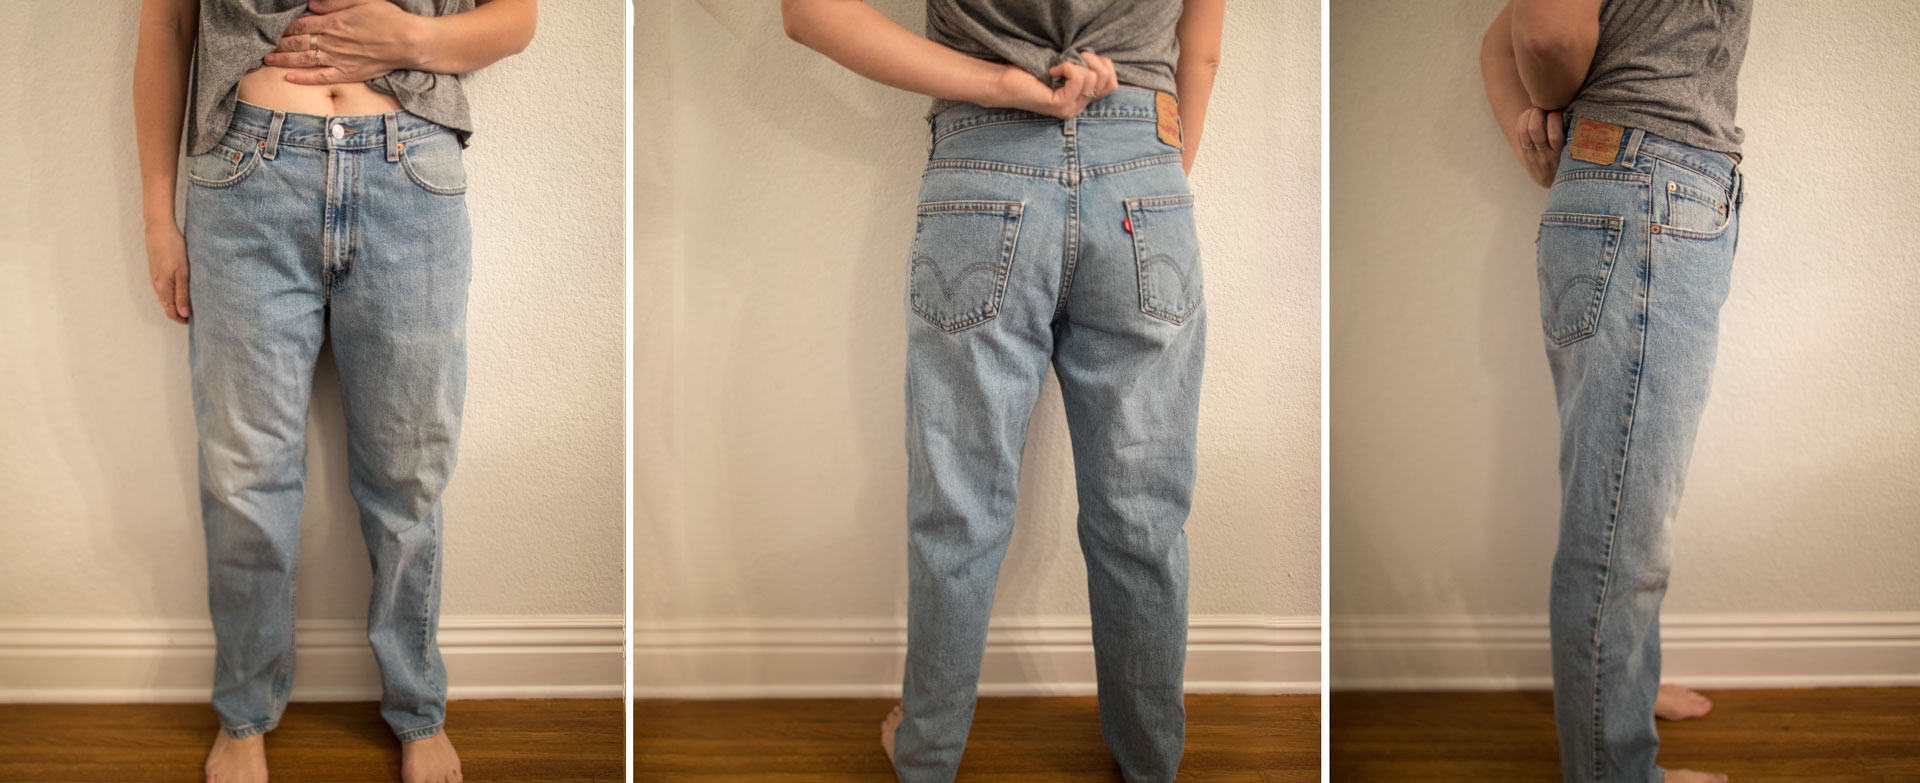 Jeans | Vintage Levi's Fit Guide 